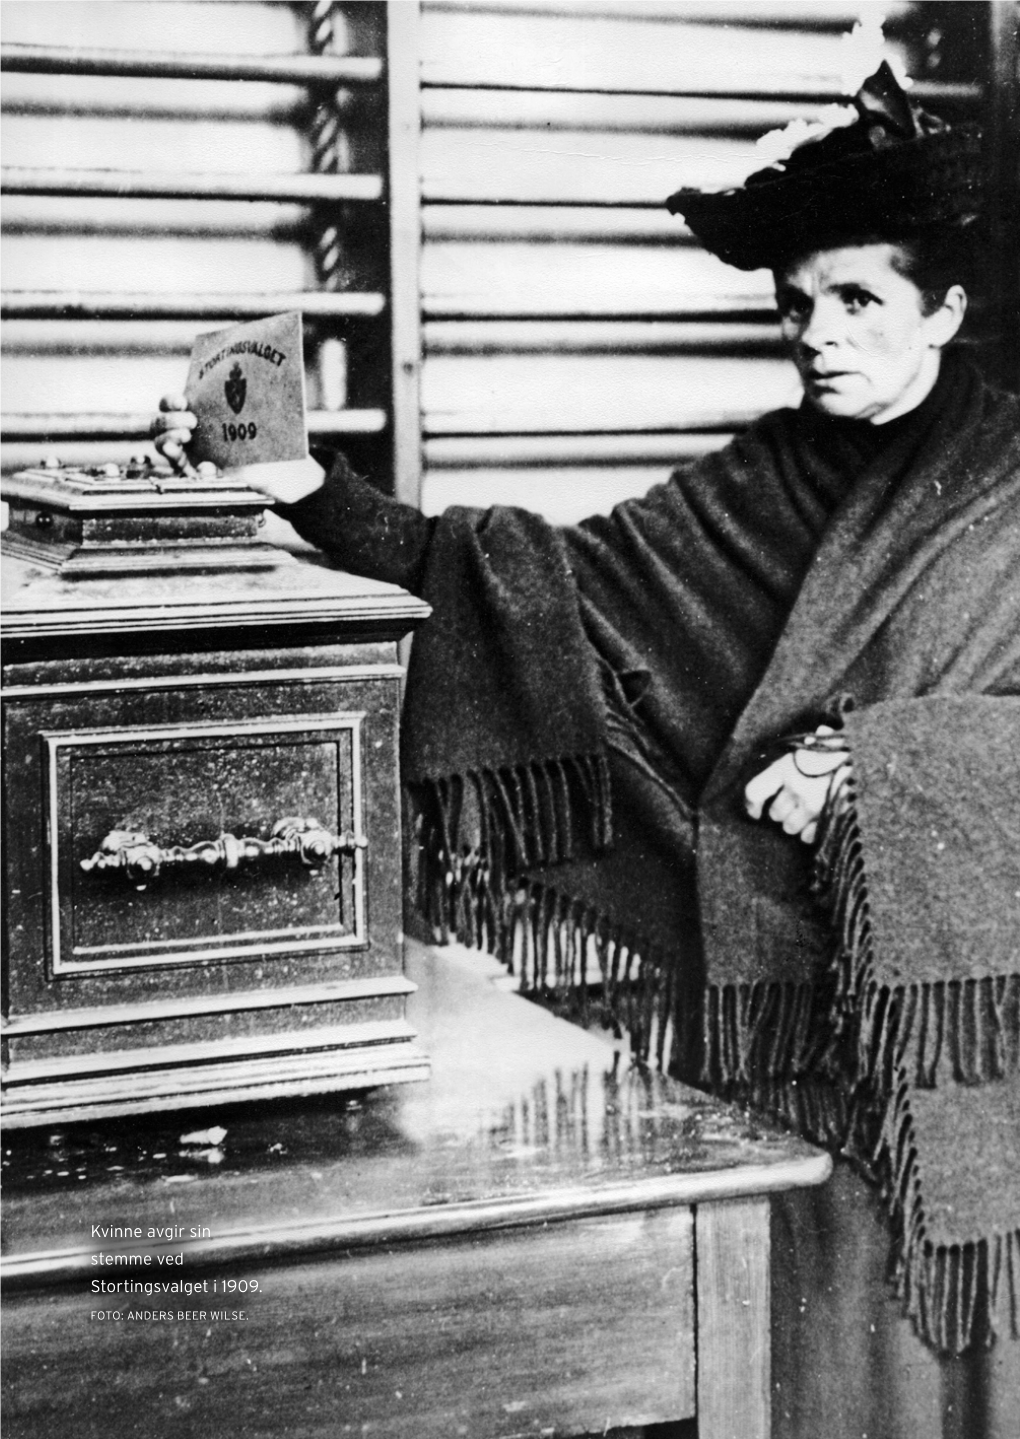 Kvinne Avgir Sin Stemme Ved Stortingsvalget I 1909